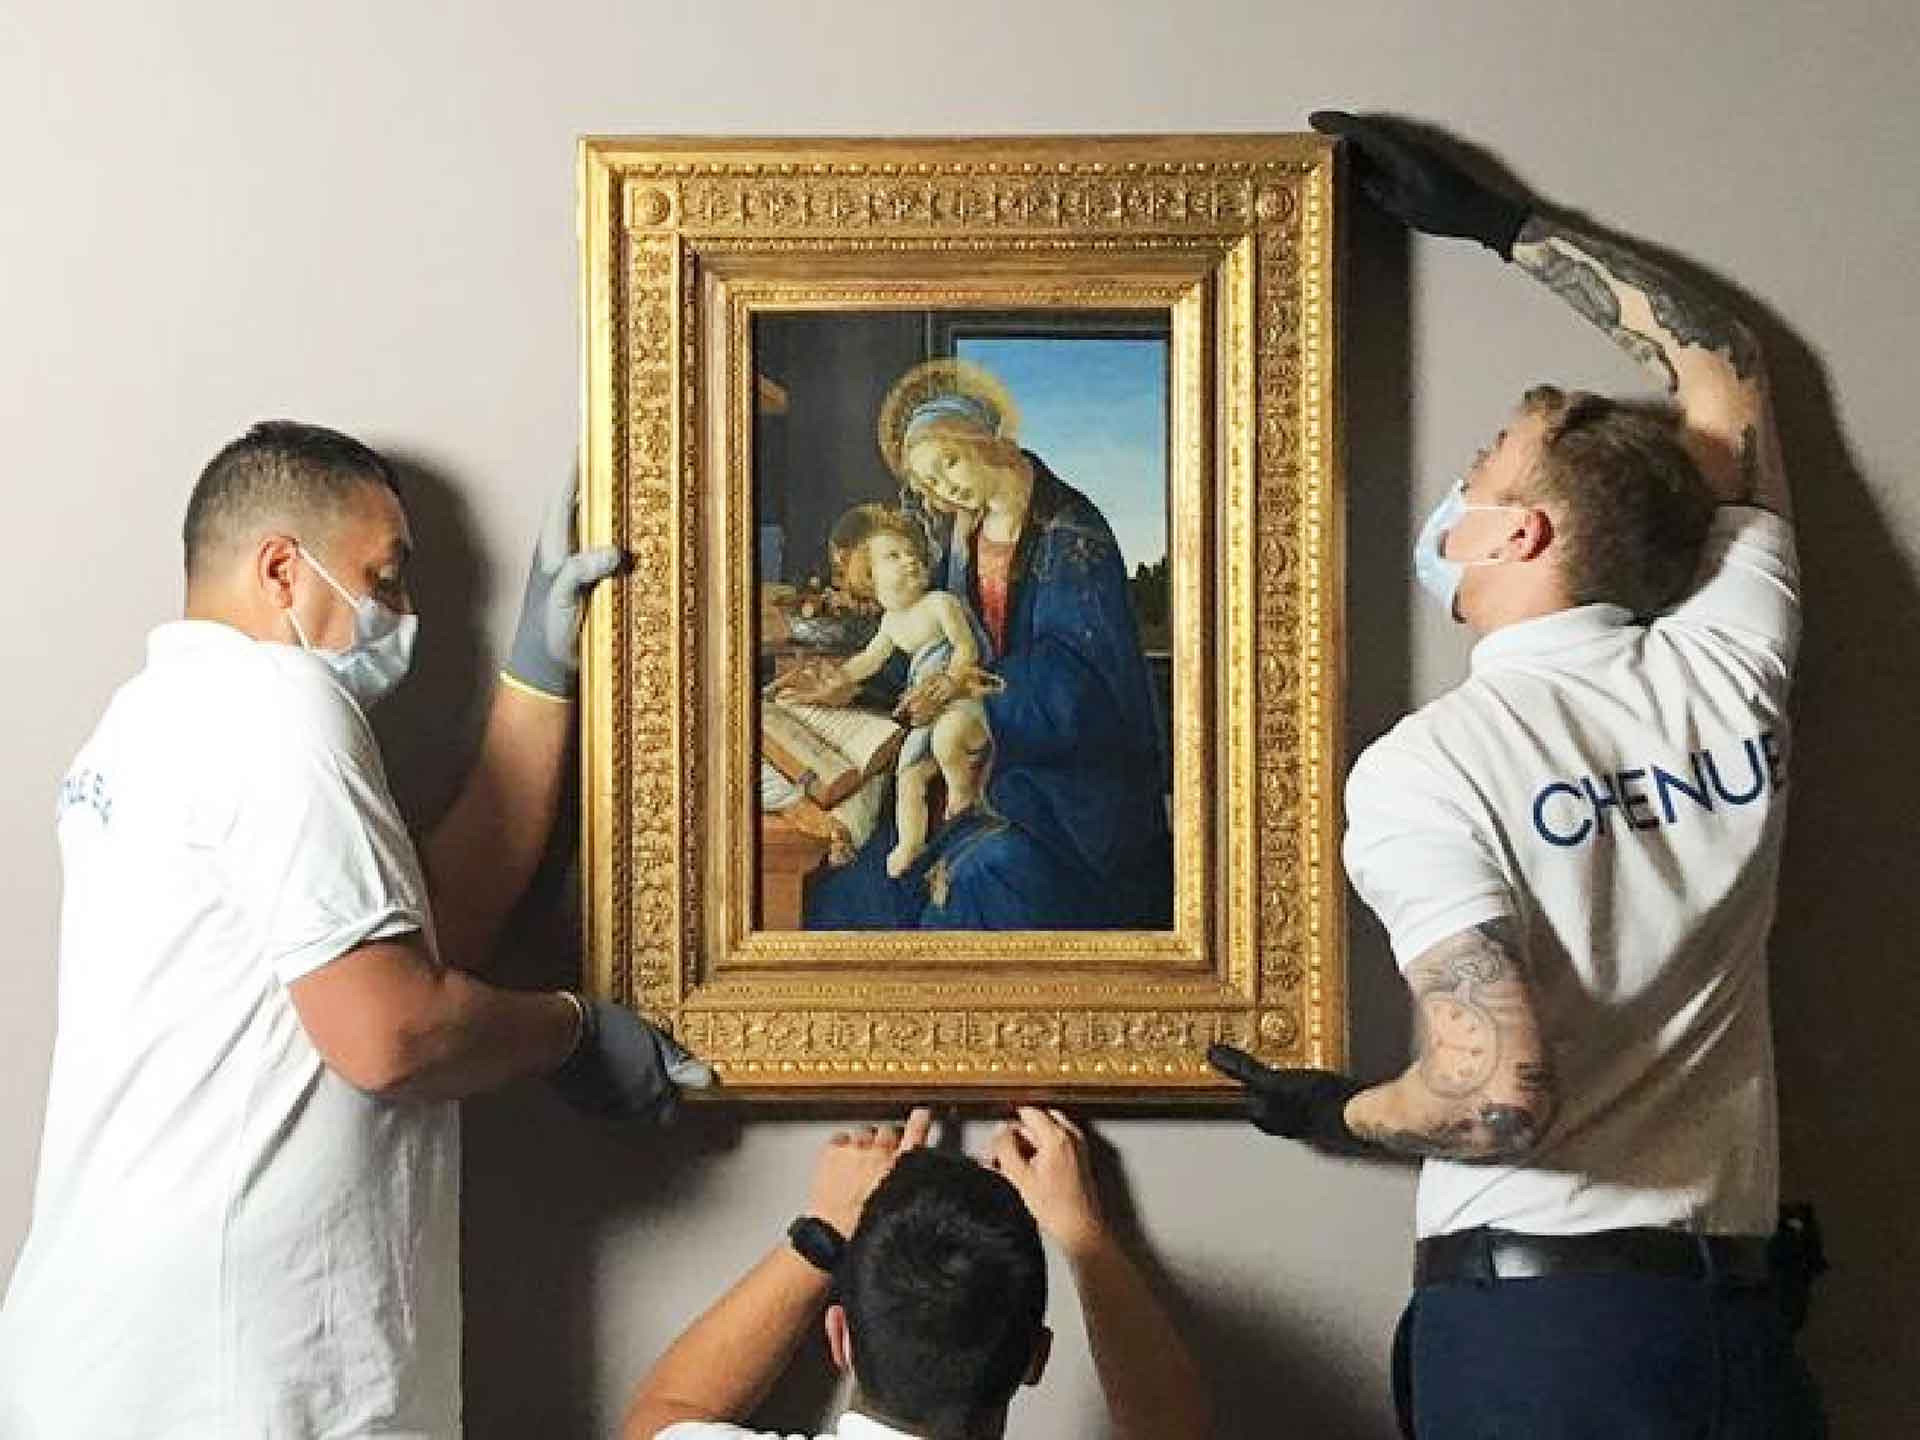 Tre persone stanno appendendo un quadro d'autore raffigurante la Madonna con Bambino. Sono attenti e indossano guanti per proteggere l'opera d'arte.